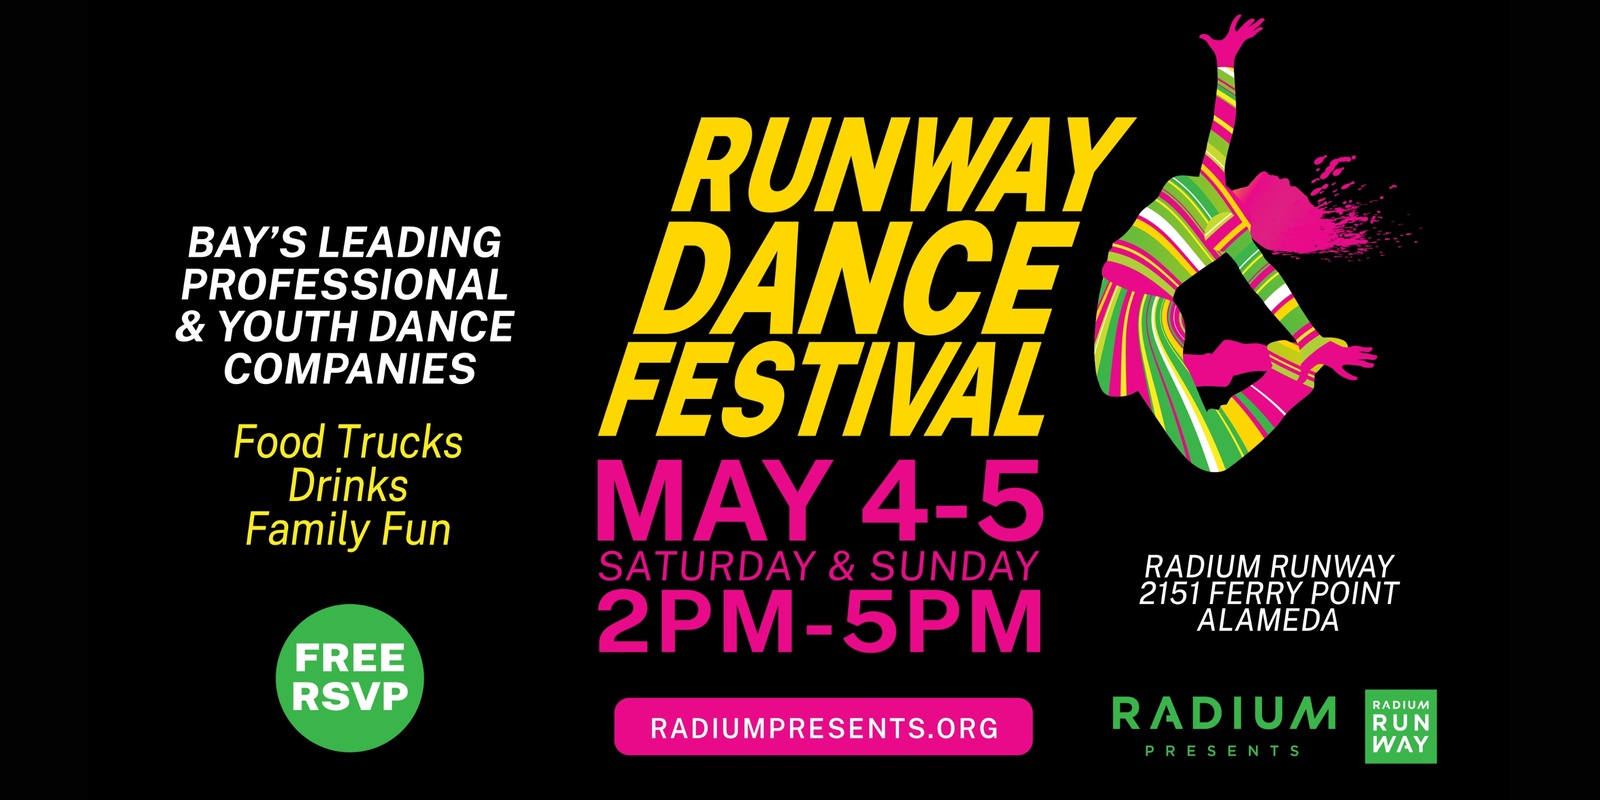 Banner image for Runway Dance Festival 